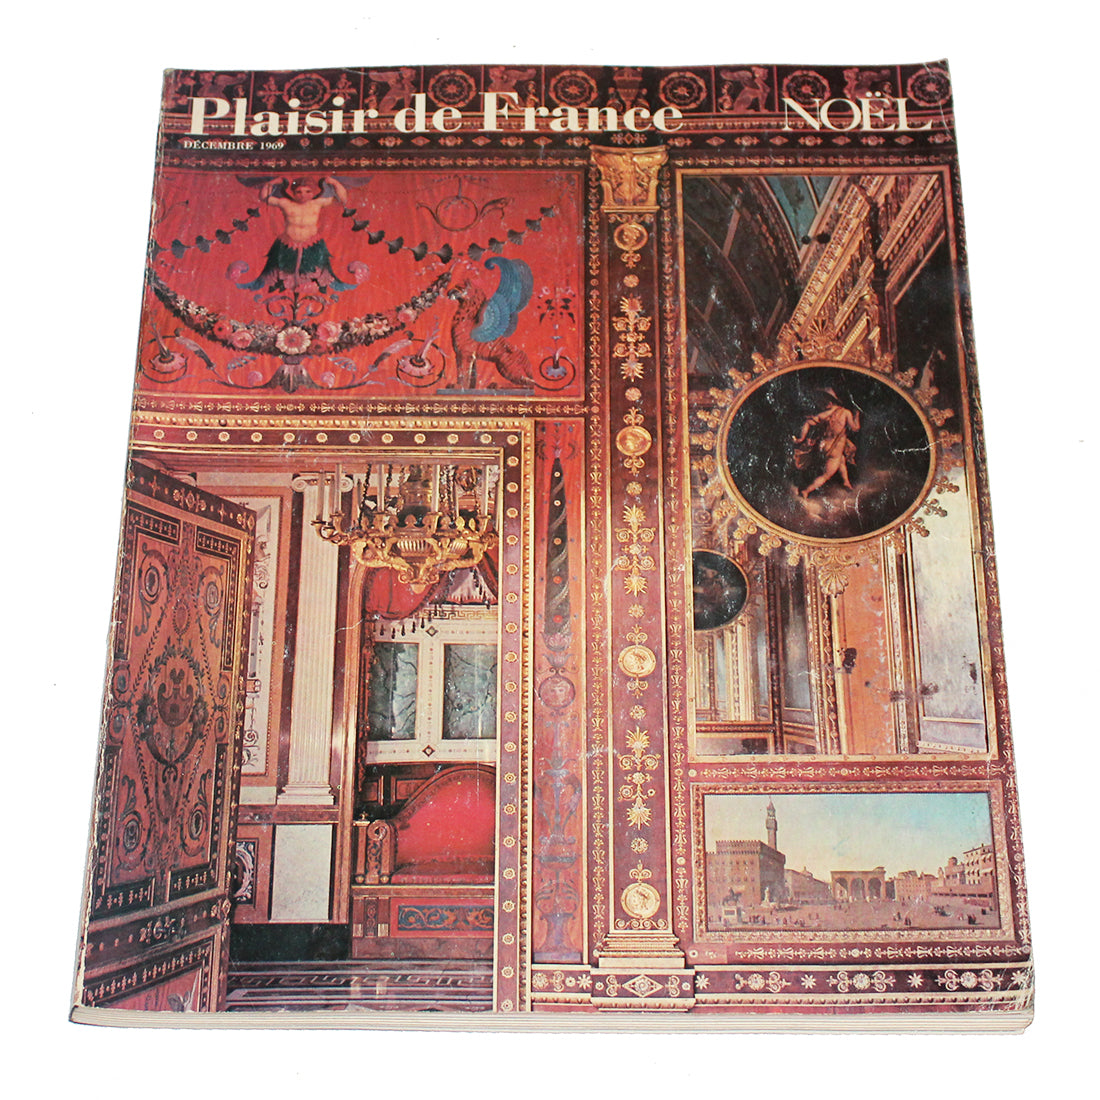 Magazine / revue Plaisir de France numéro spécial Noël 1969